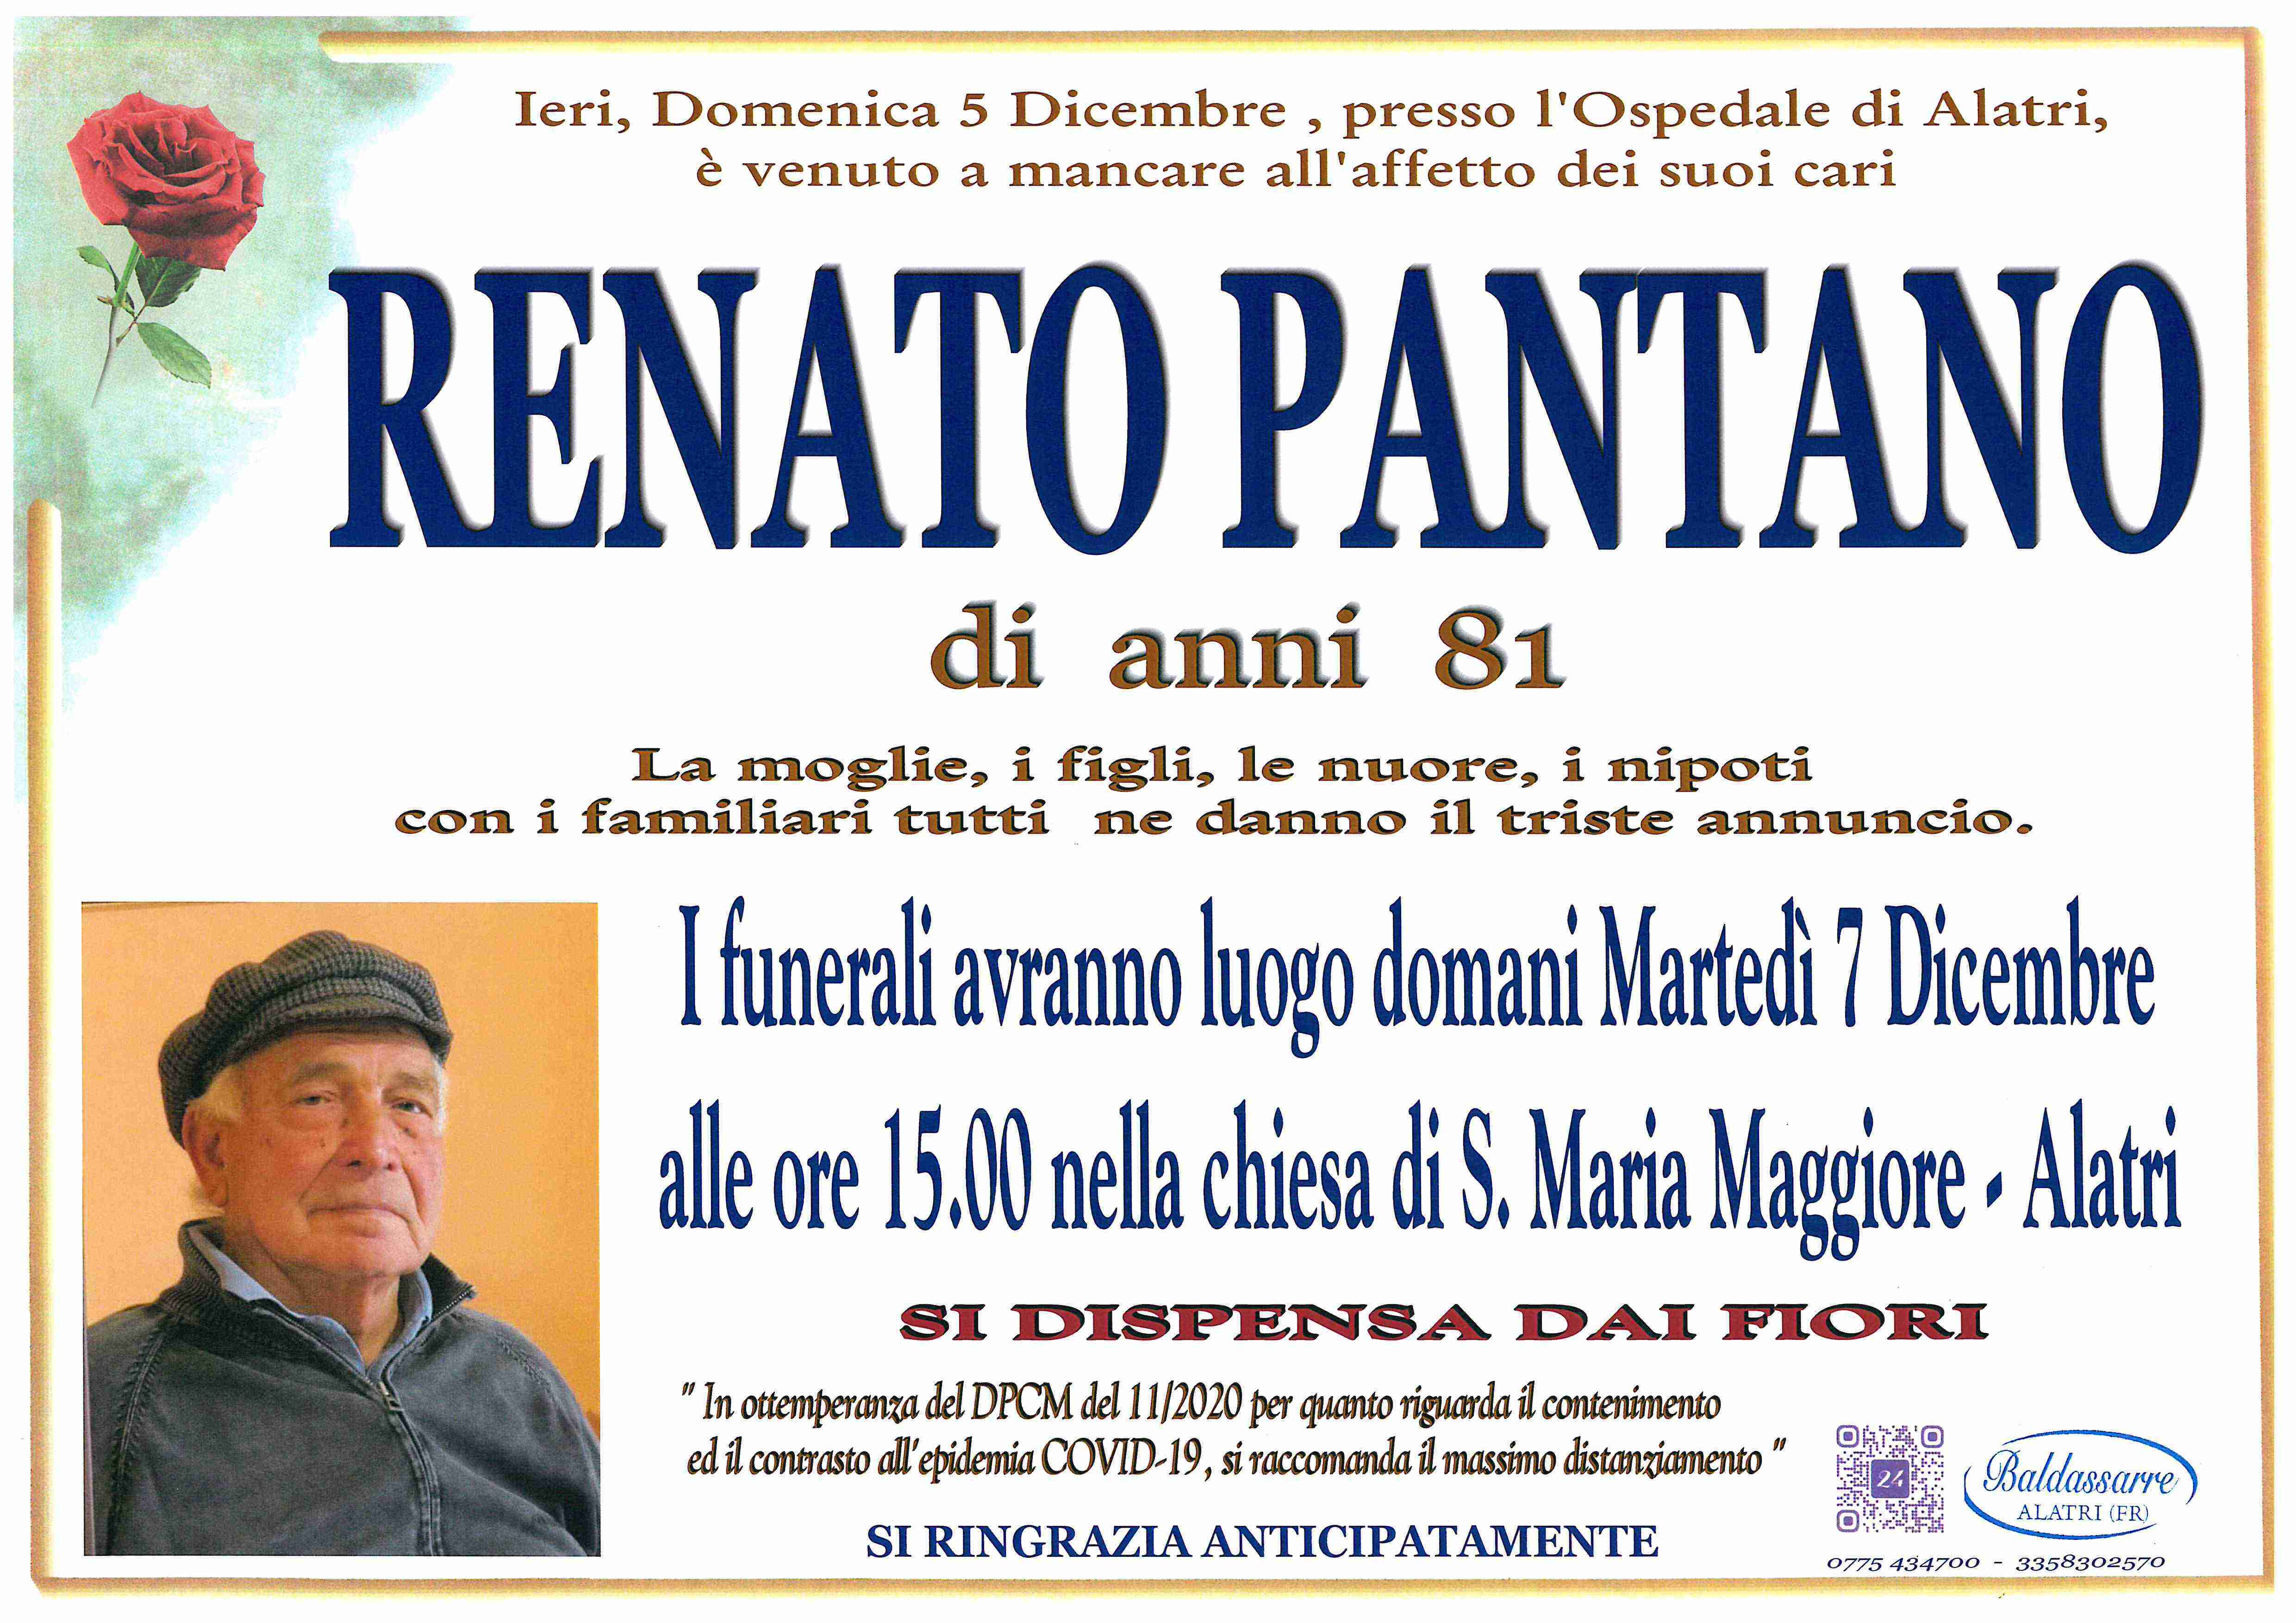 Renato Pantano